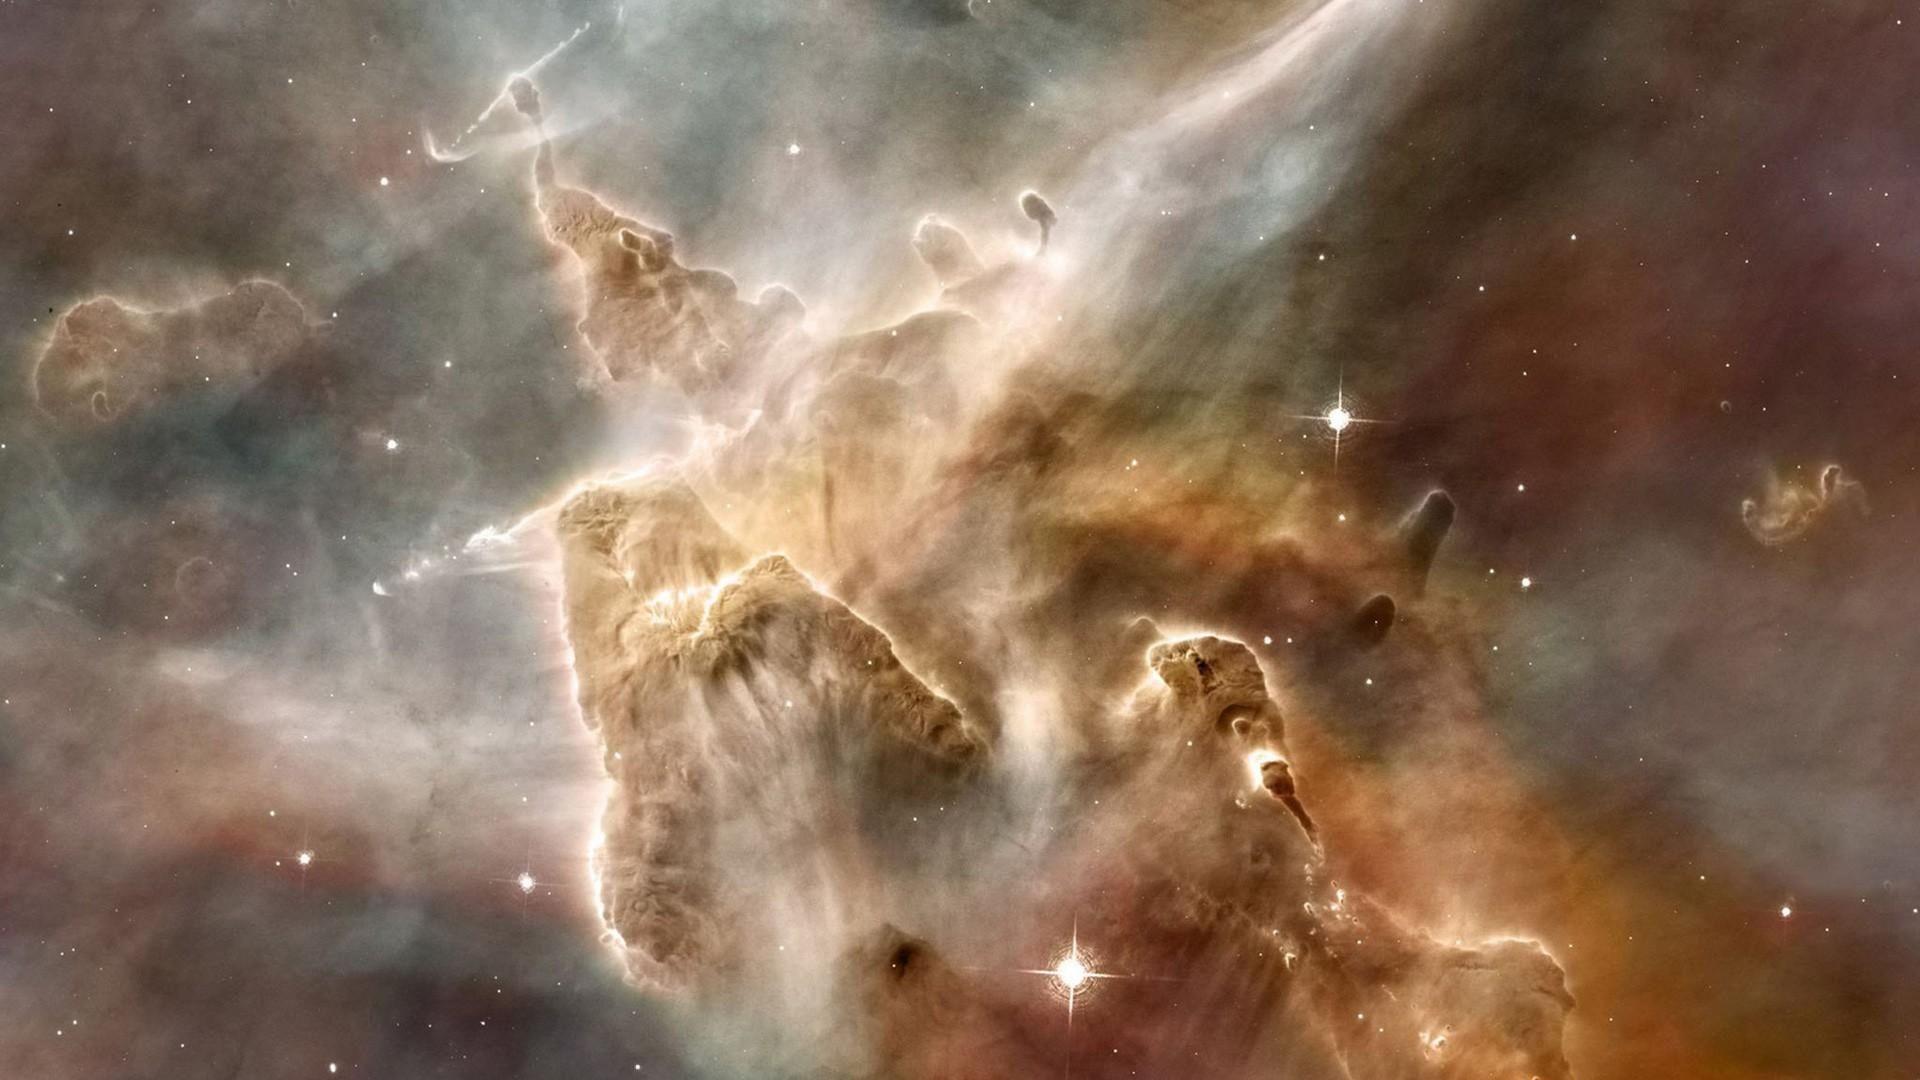 Download Wallpaper 1920x1080 galaxy, nebula, star, explosion Full HD